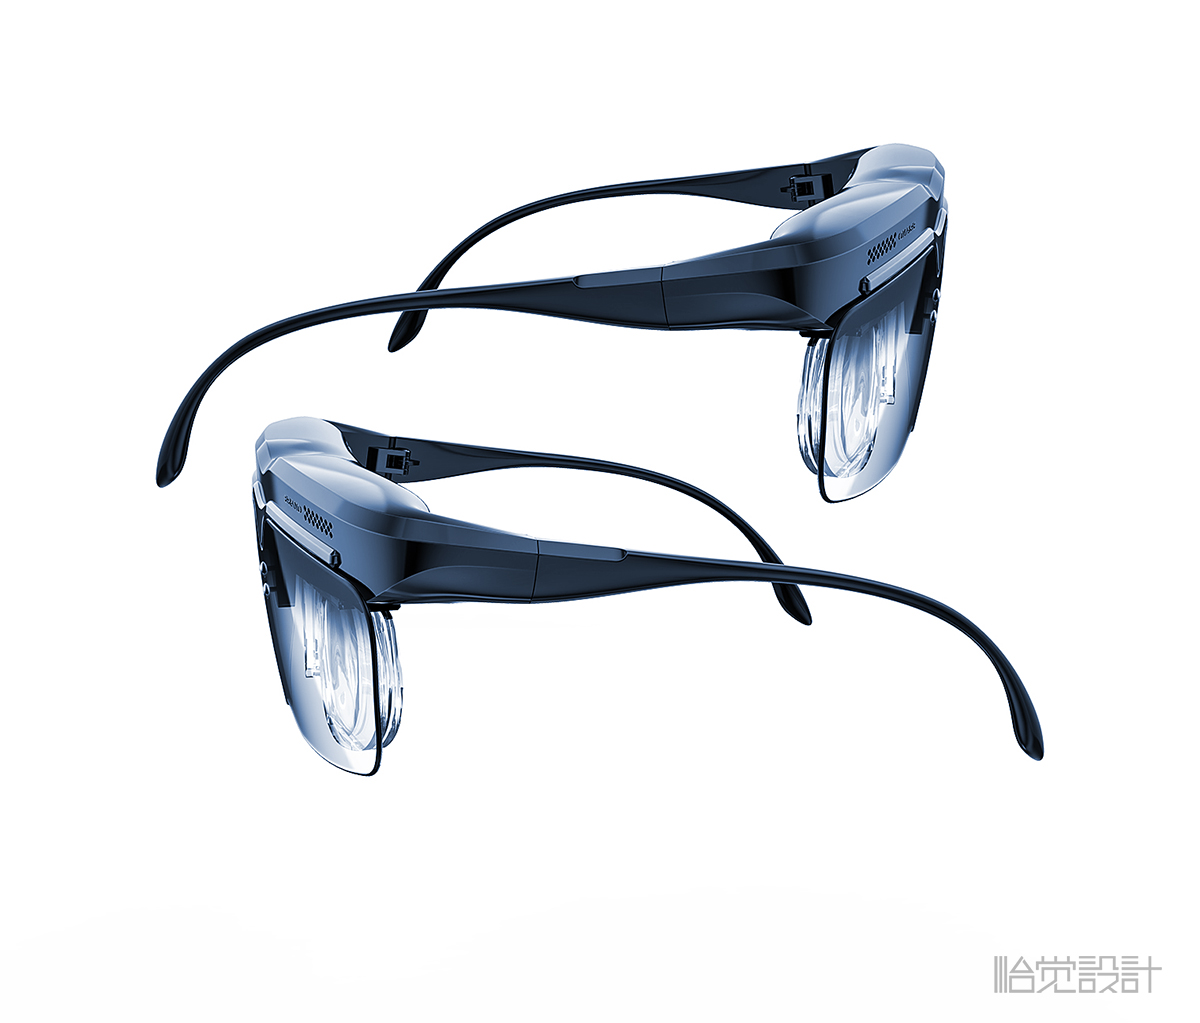 眼镜-AR眼镜-智能眼镜-VR眼镜-治疗眼镜-穿戴产品-怡觉设计 (2).jpg